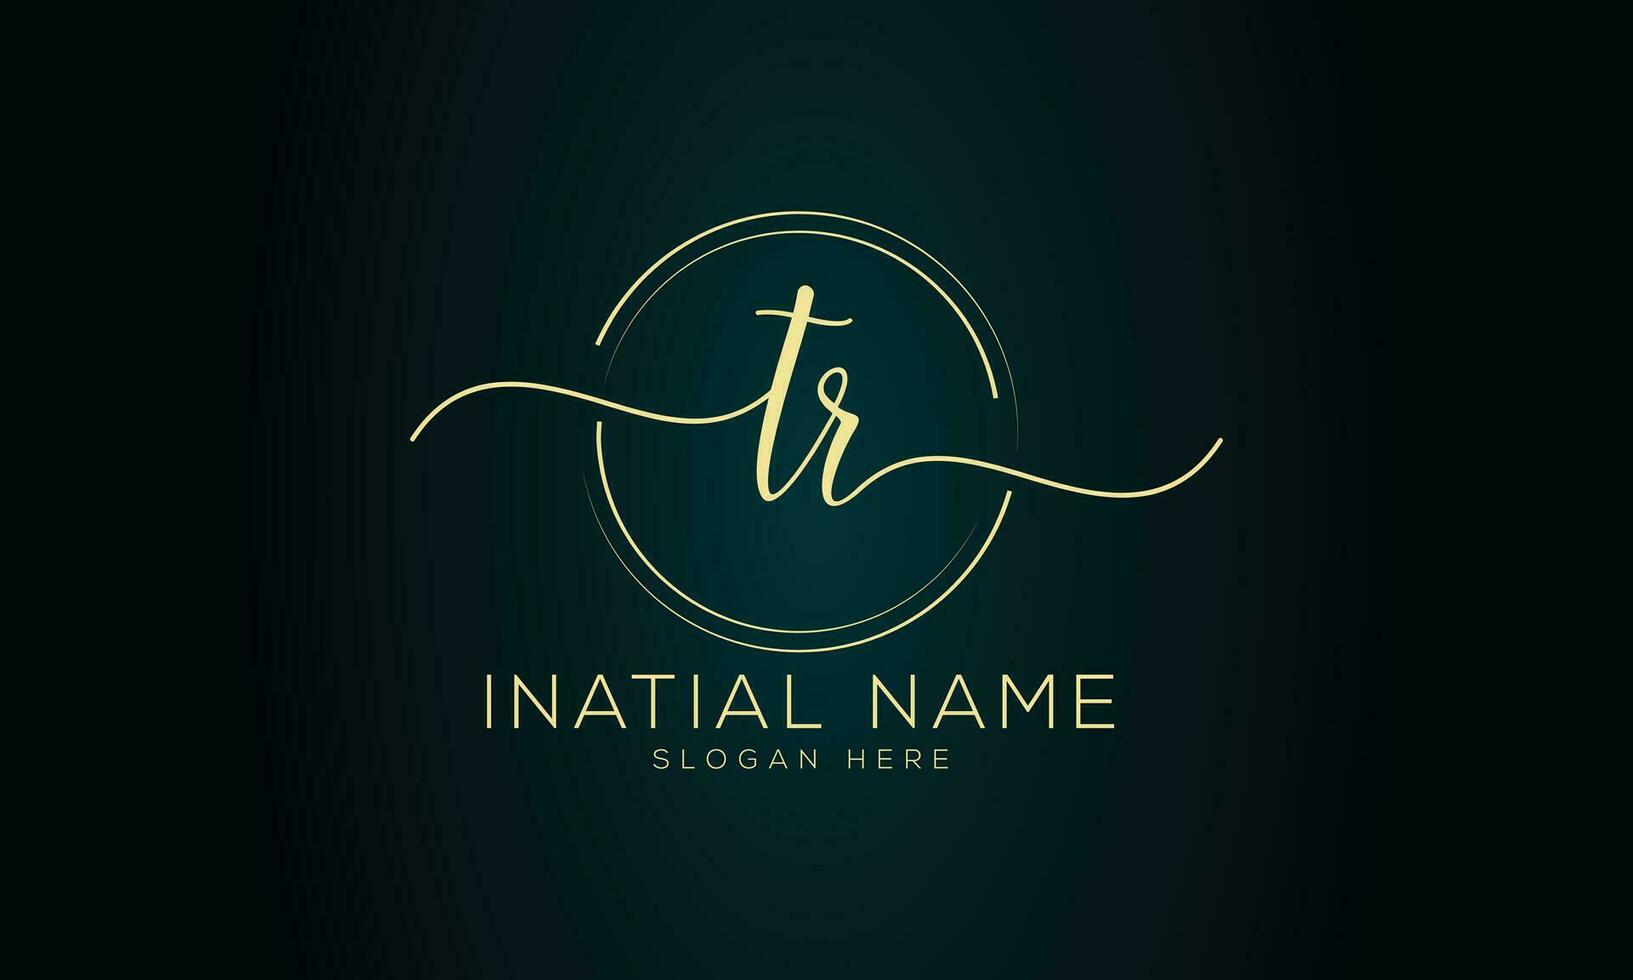 Tr initial handwriting signature logo design vector